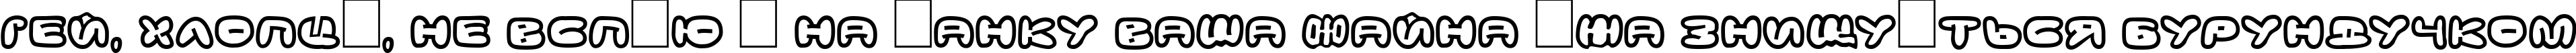 Пример написания шрифтом DS Down Cyr текста на украинском